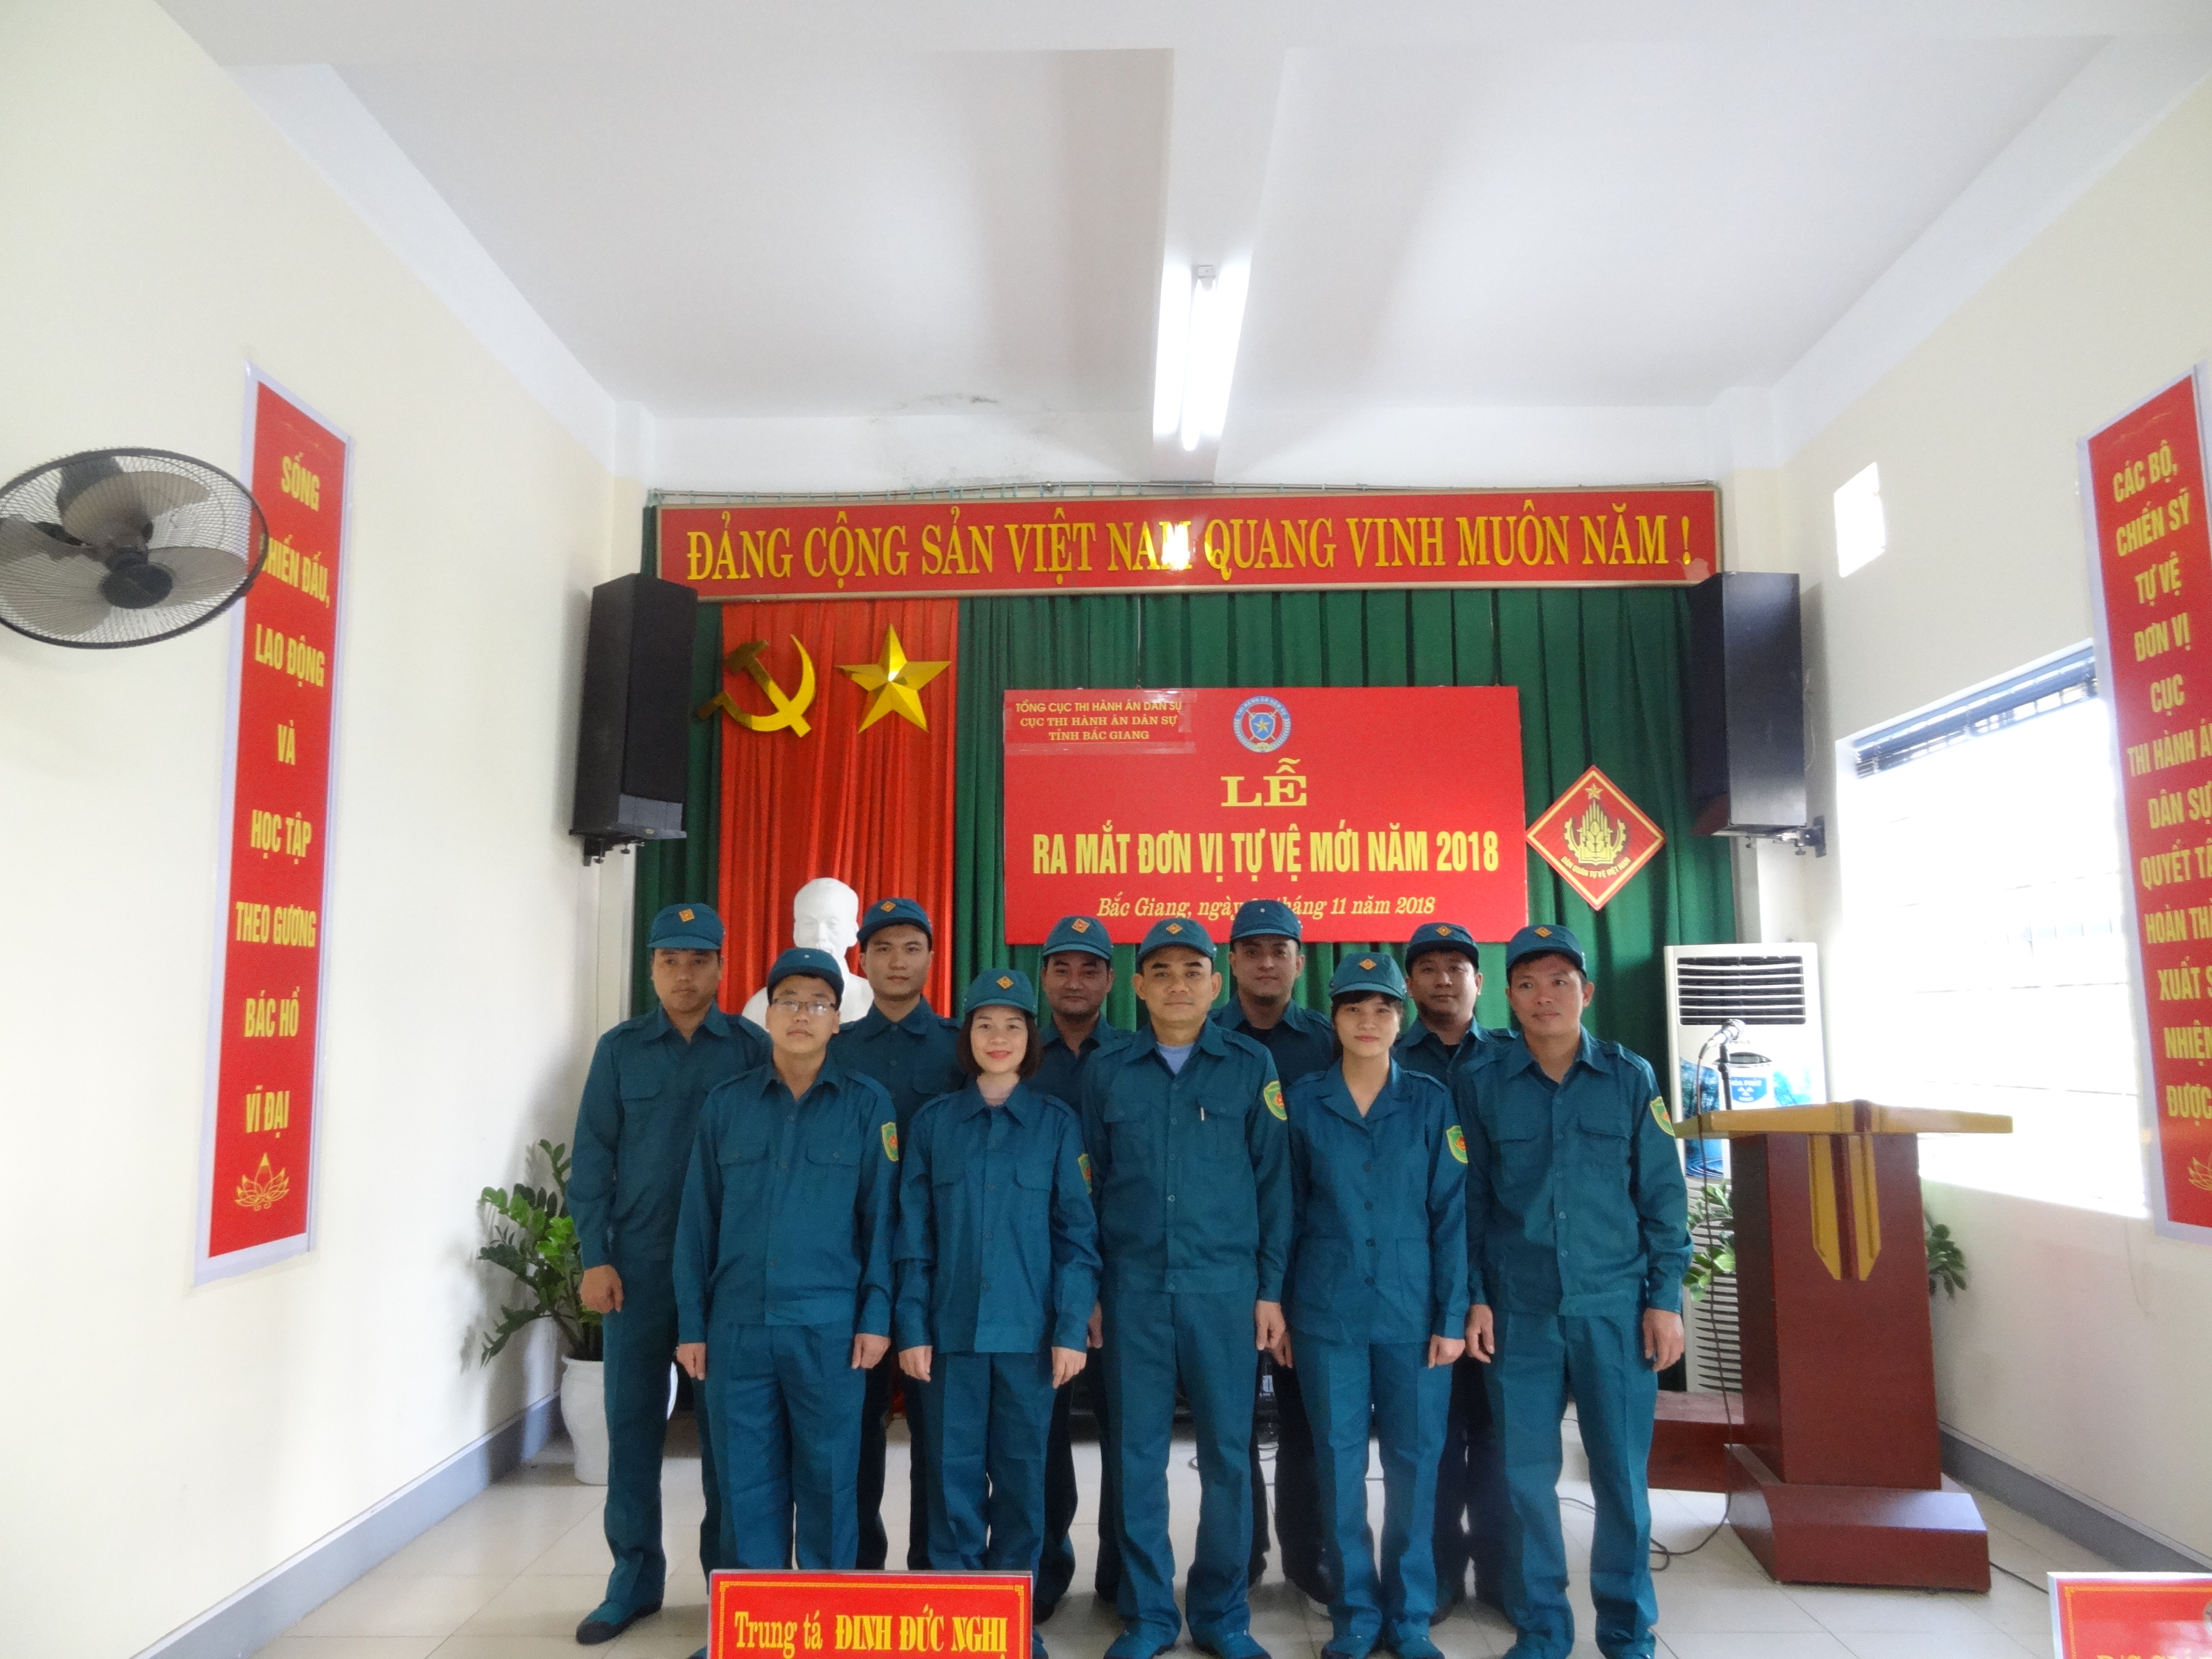 Lễ ra mắt đơn vị tự vệ Cục Thi hành án dân sự tỉnh Bắc Giang